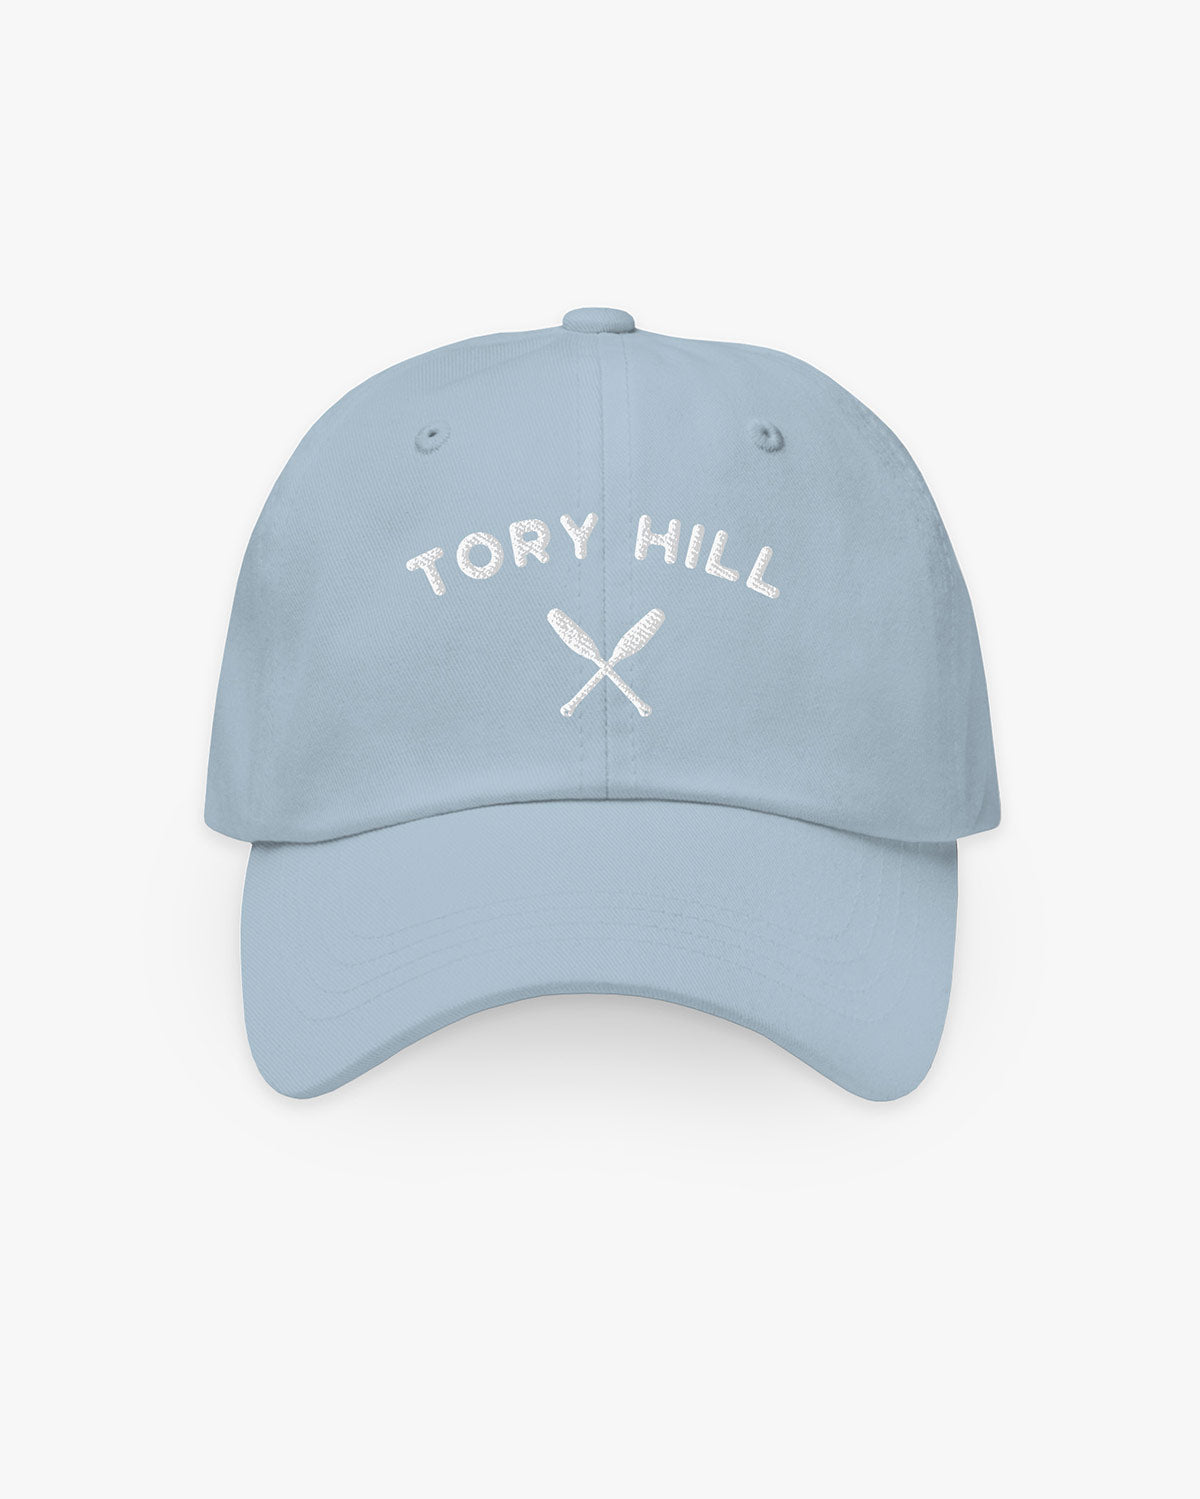 Oars - Tory Hill - Hat